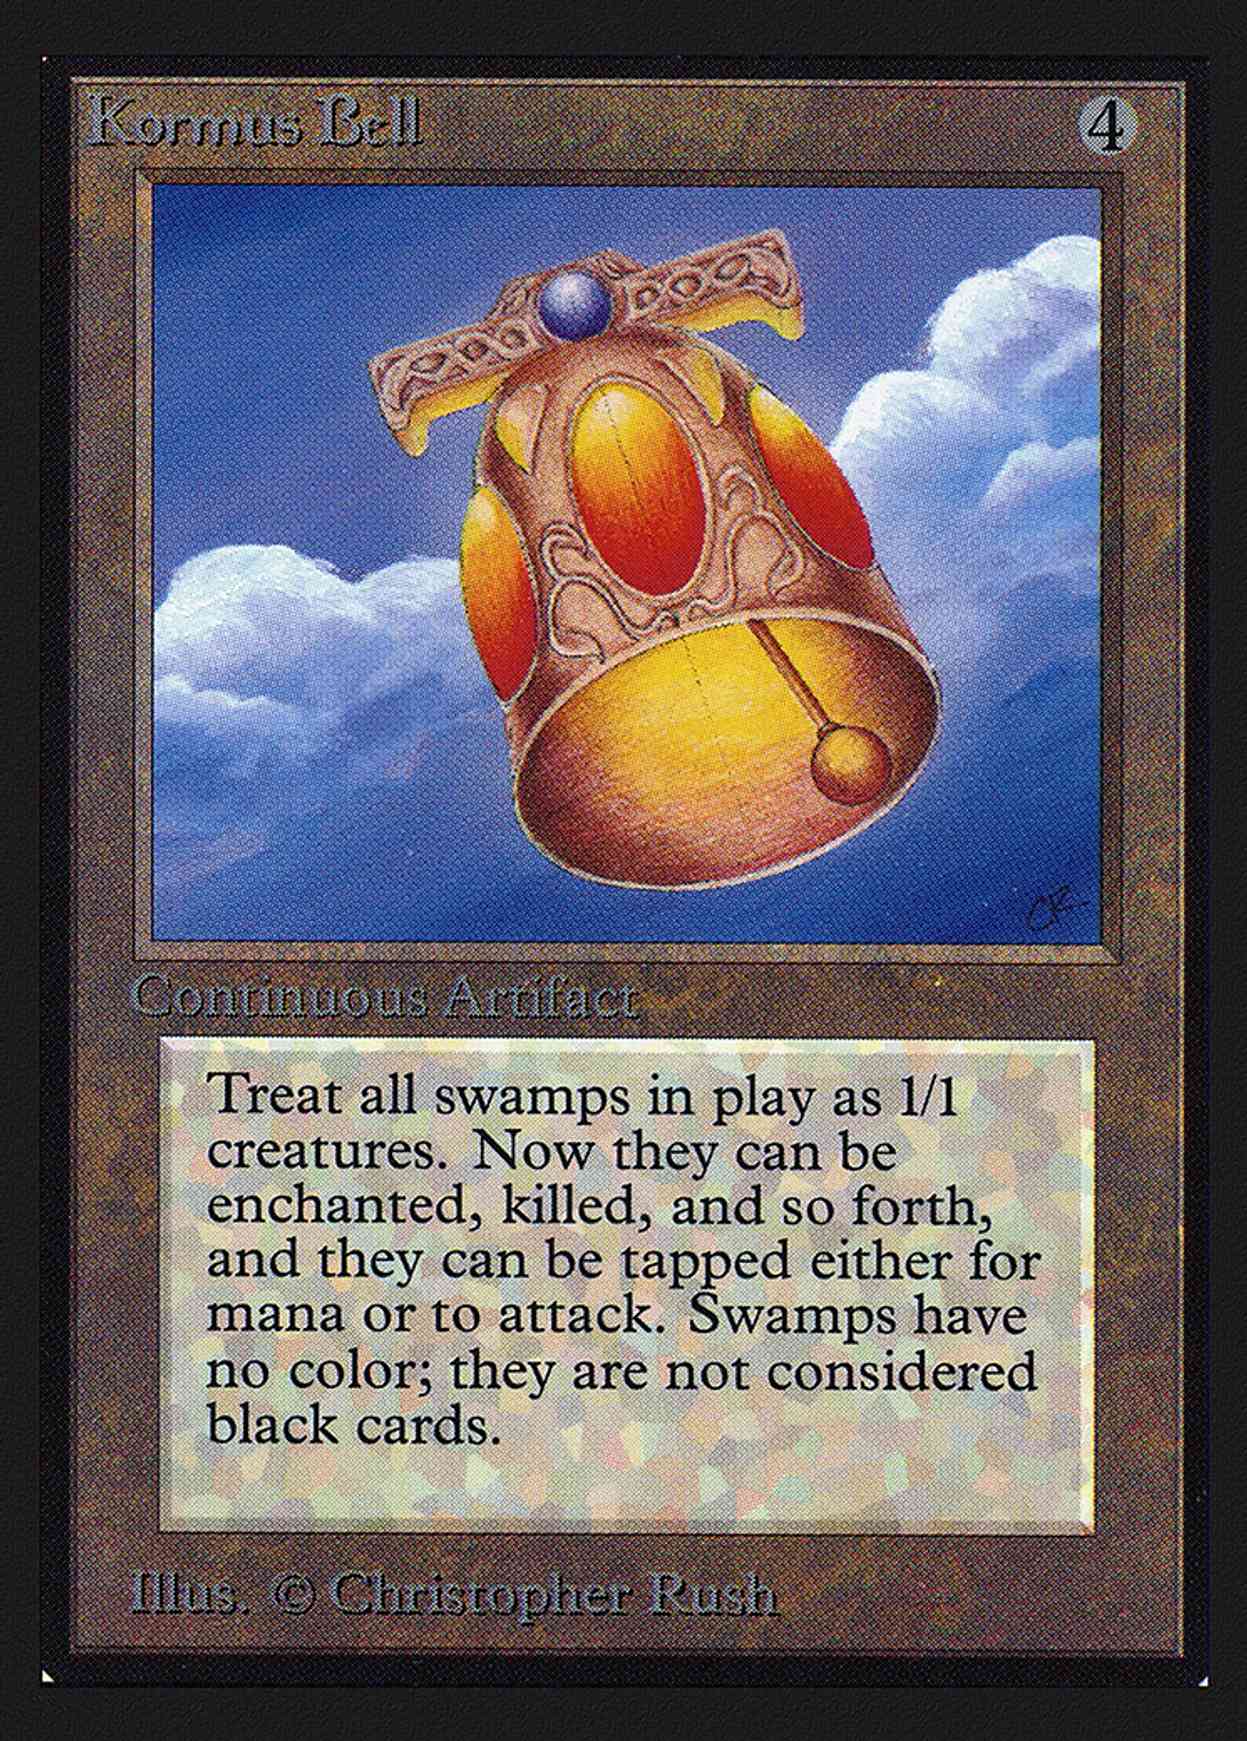 Kormus Bell (IE) magic card front